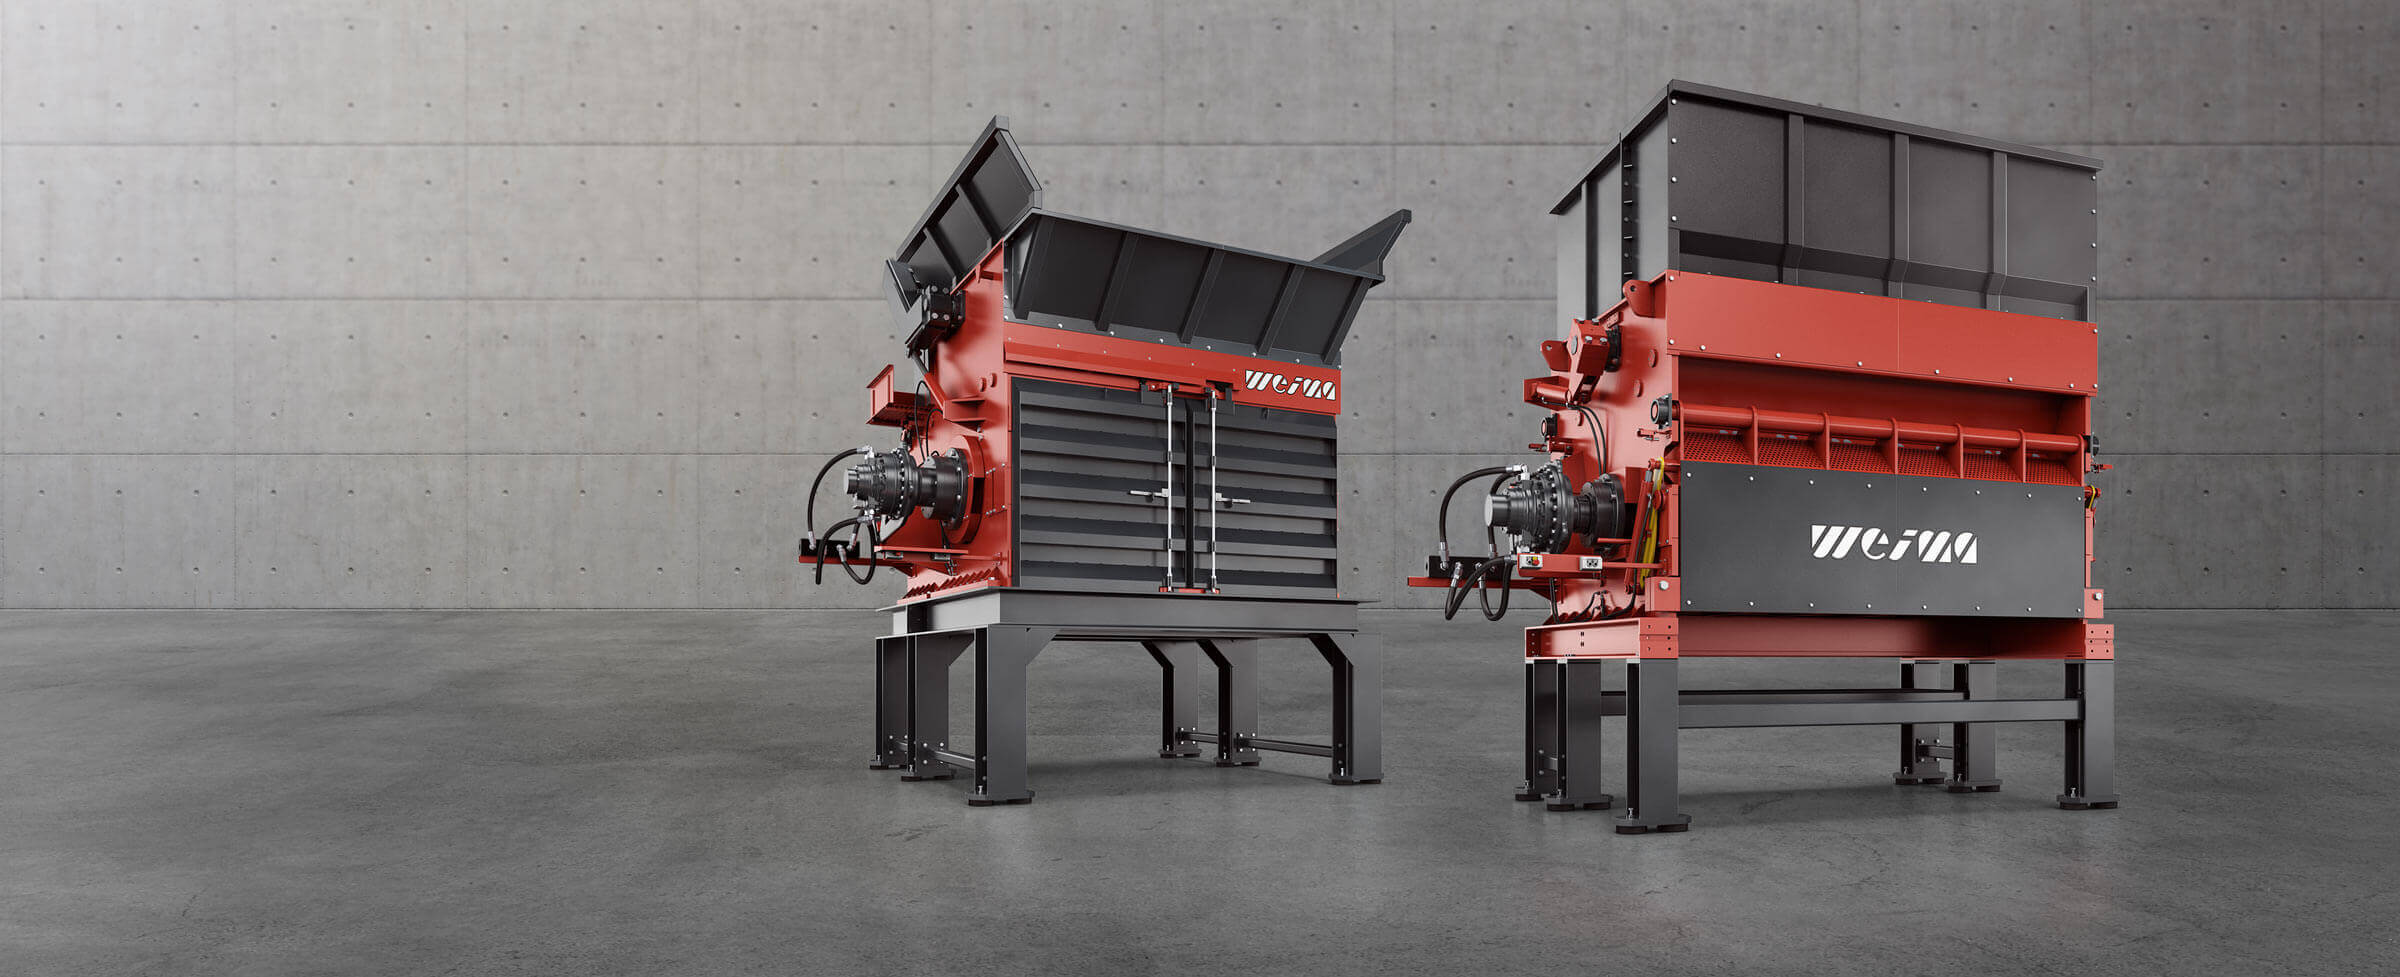 HÄGGLUNDS Bosch Rexroth Hydraulikantriebe an zwei WEIMA Abfallzerkleinerern, die auf einem Betonboden stehen